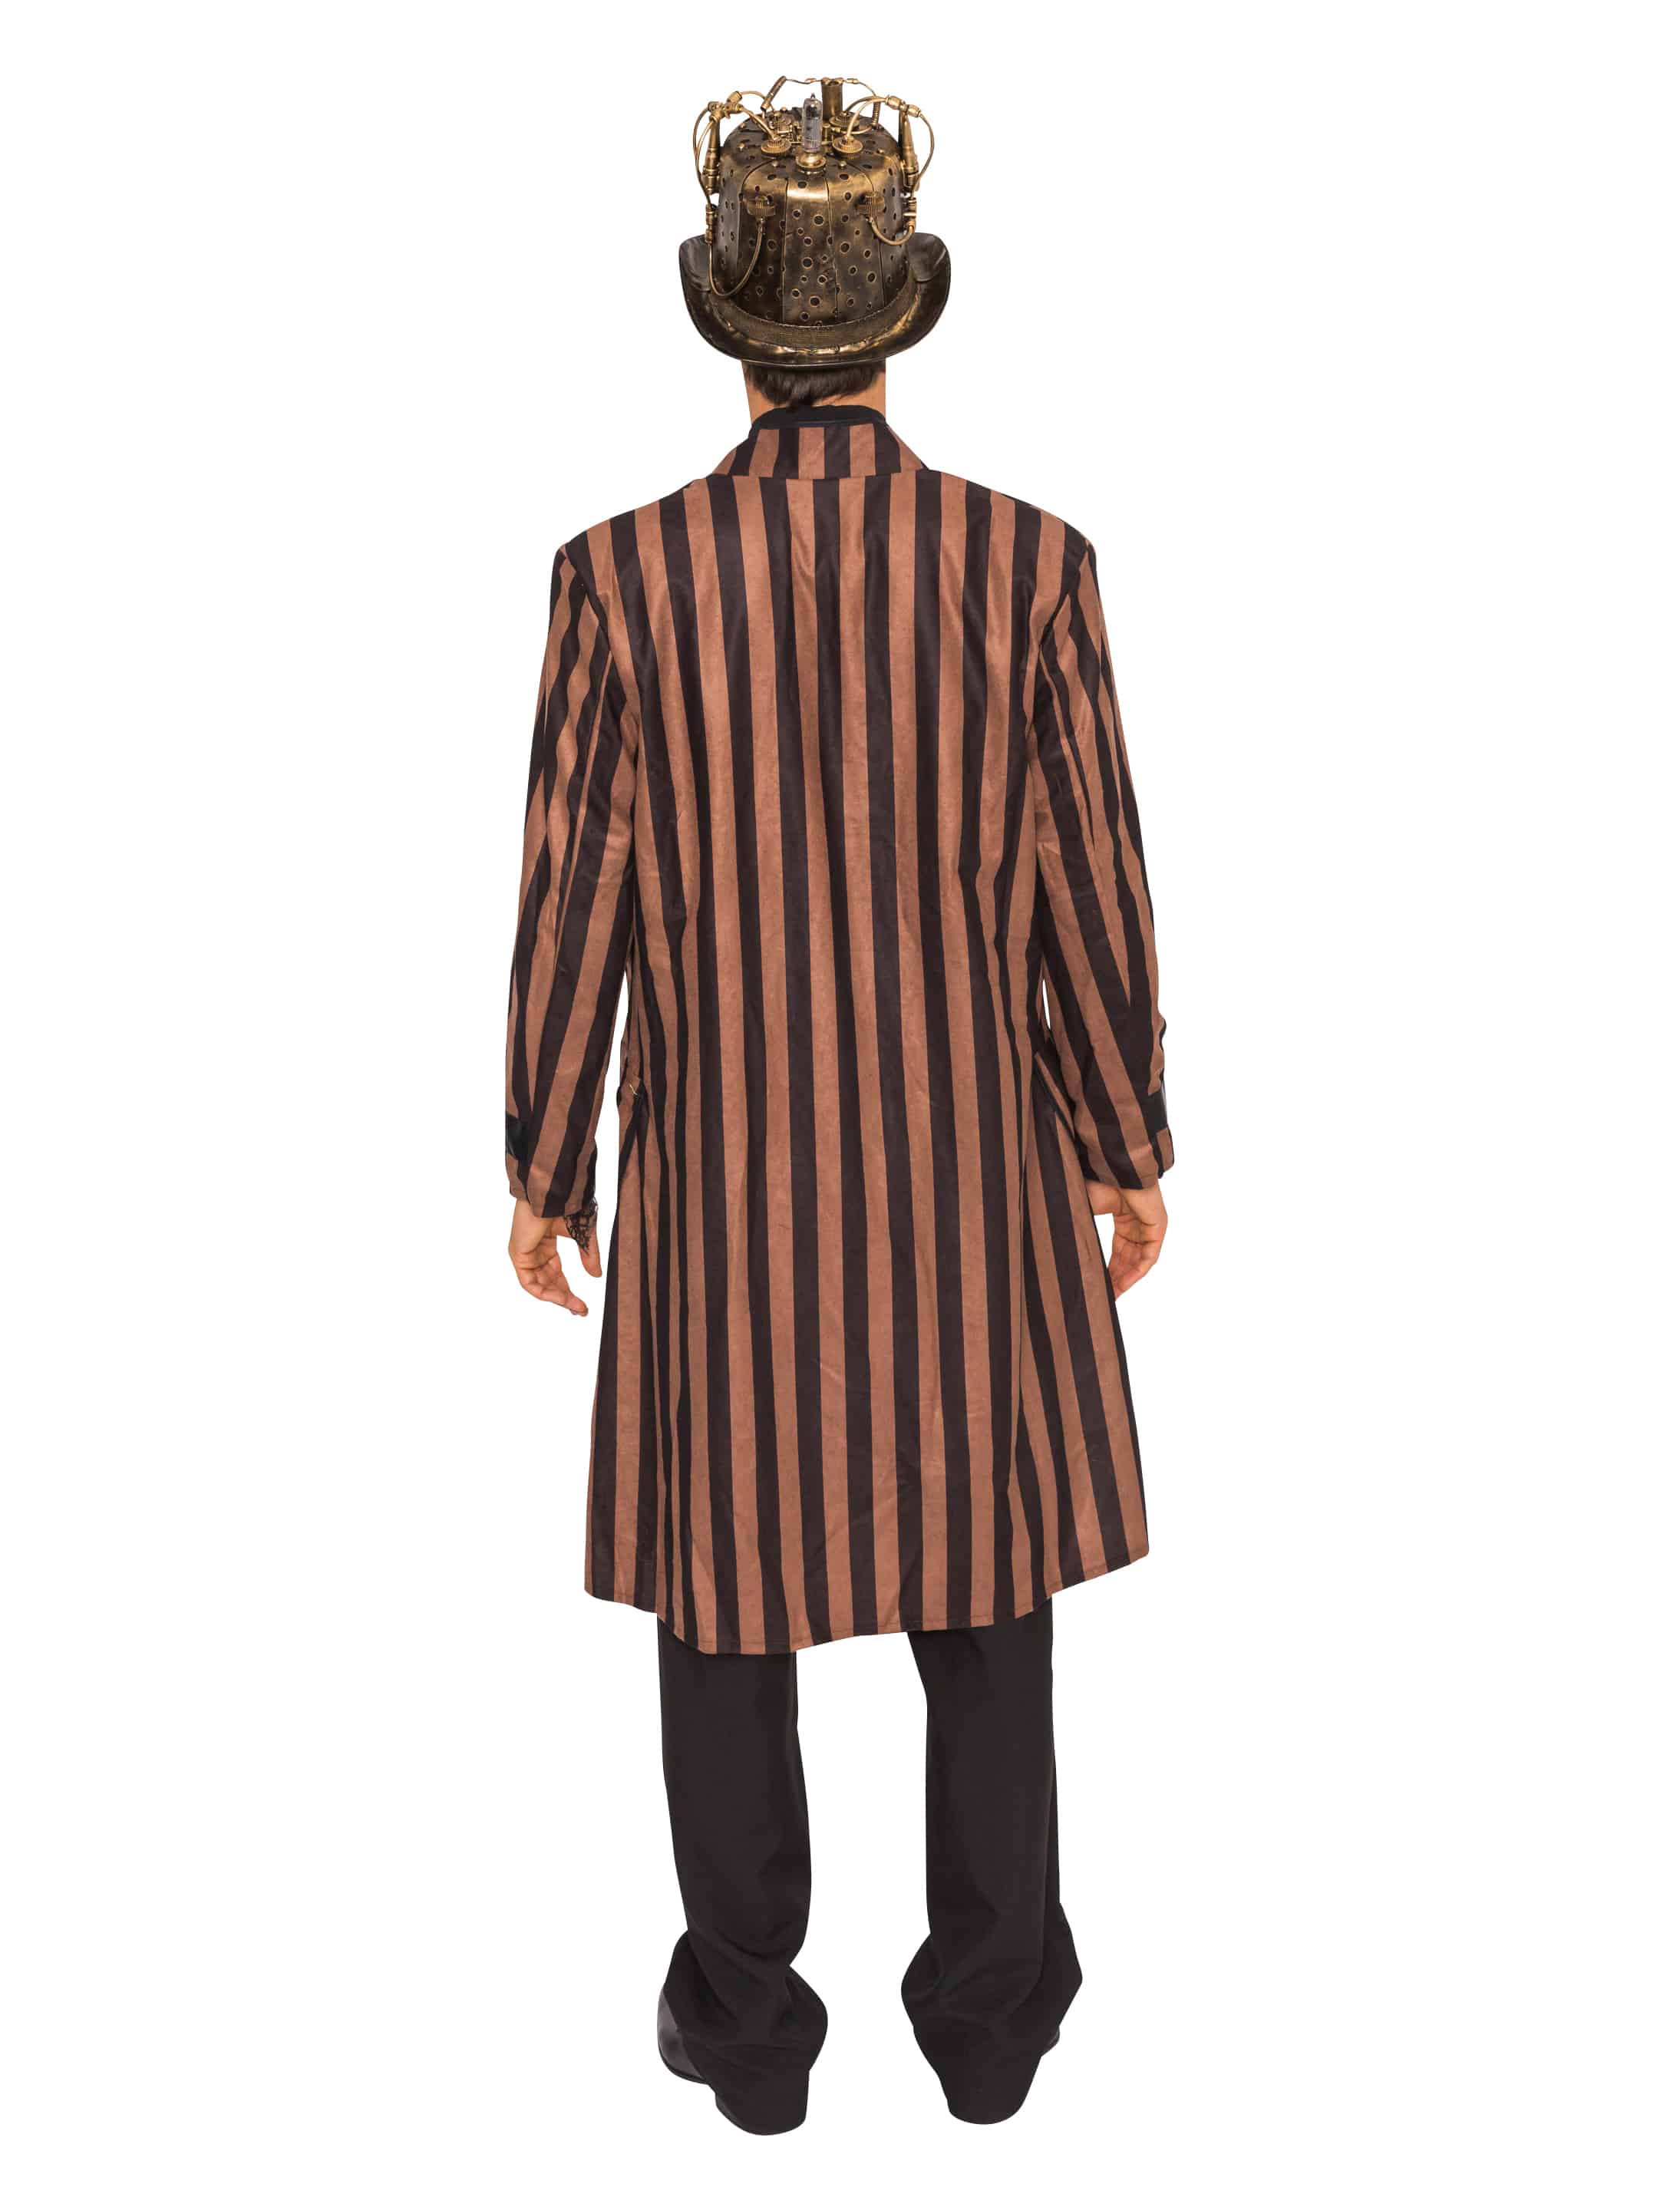 Mantel Steampunk mit Streifen Herren braun/schwarz 2XL